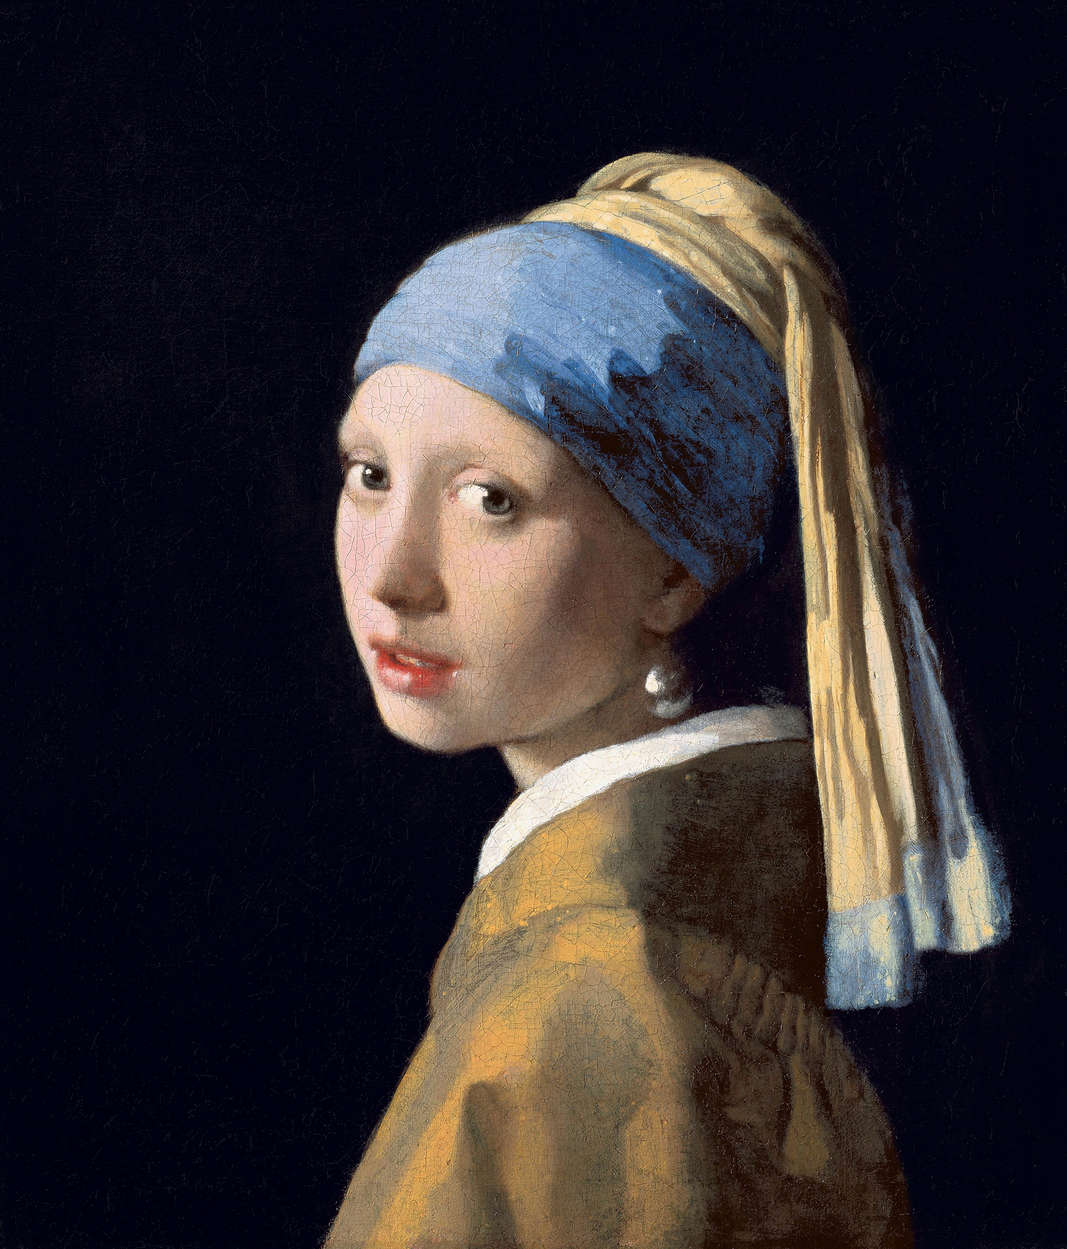             Il murale "La ragazza con l'orecchino di perla" di Jan Vermeer
        